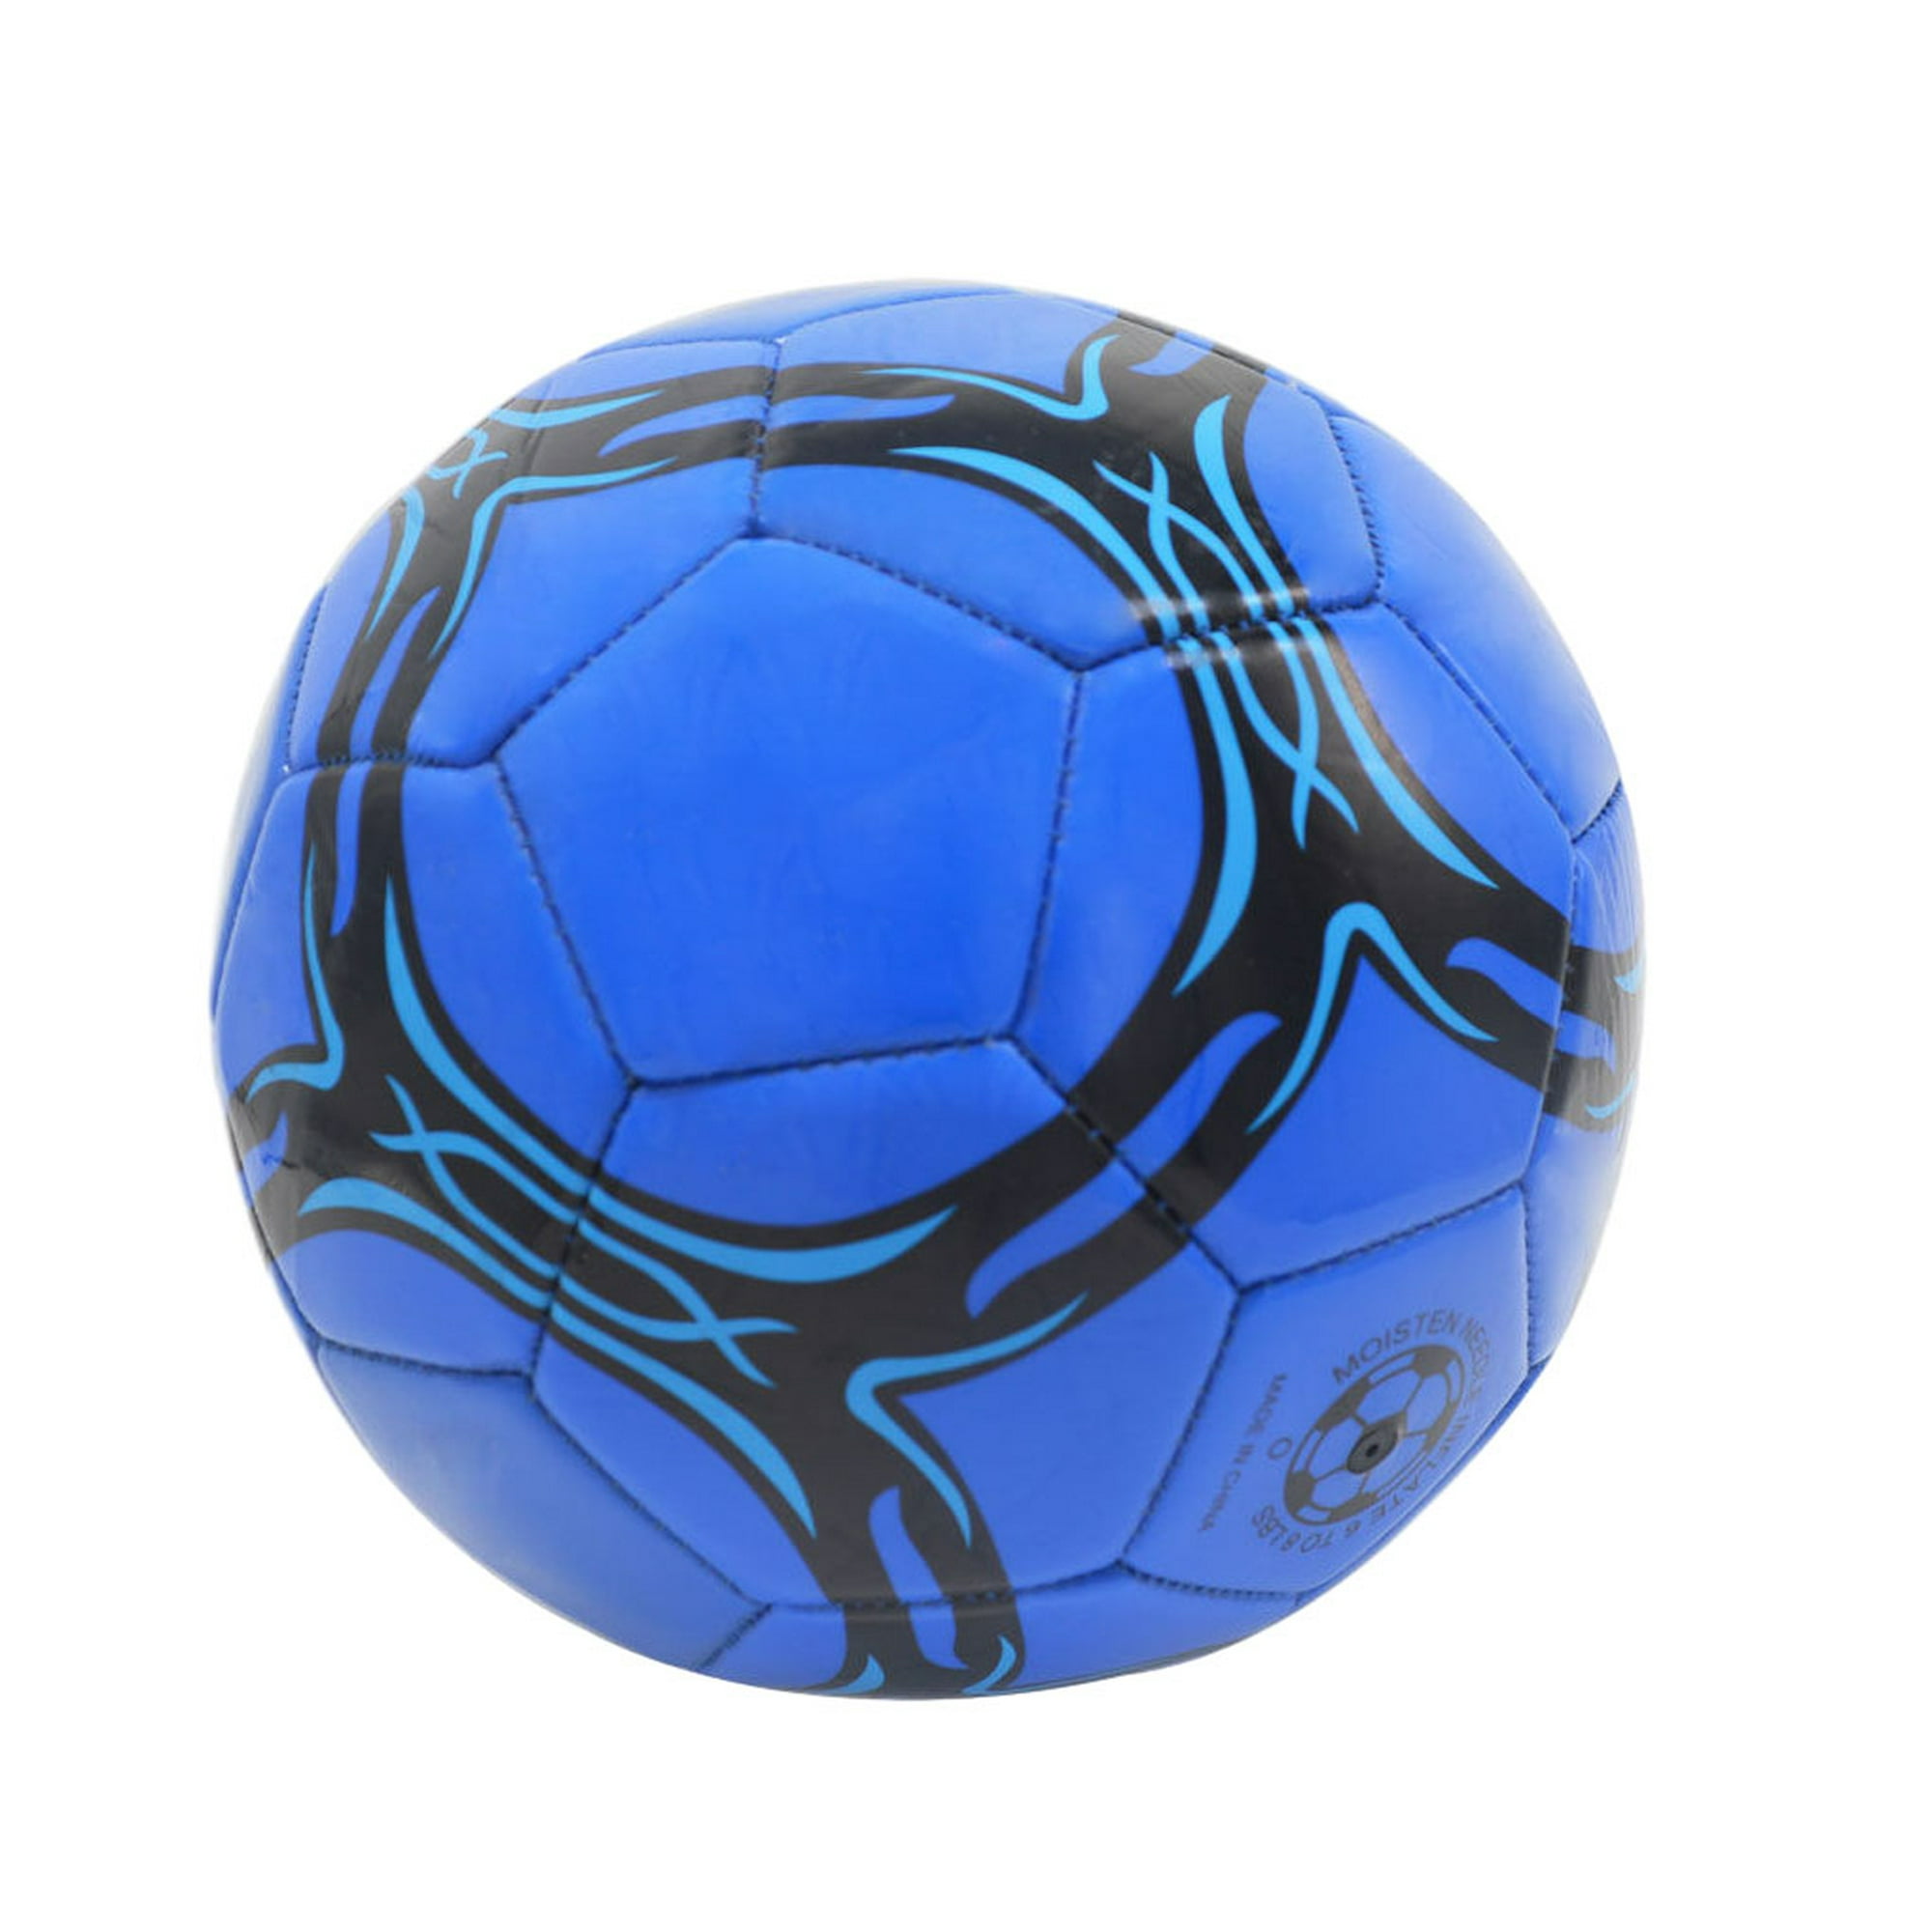 El balón de fútbol oficial de la temporada, ahora rebajado en  - Sport